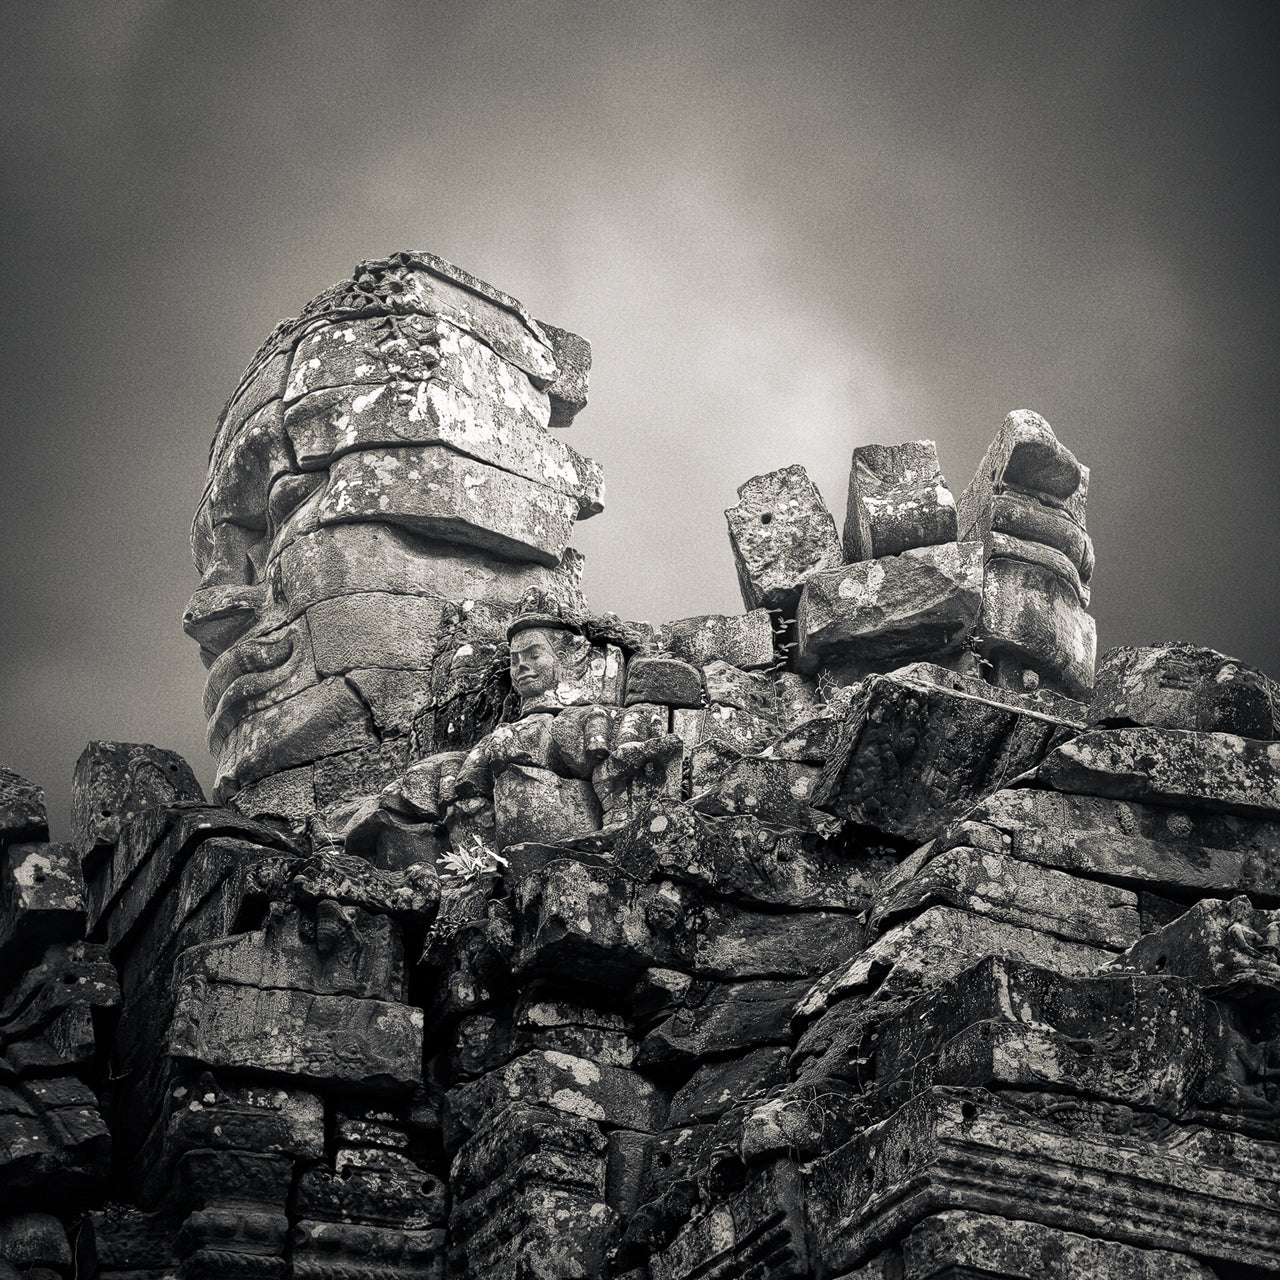 Face-Tower Ruin, Banteay Kdei Temple, Angkor, Cambodia. 2020